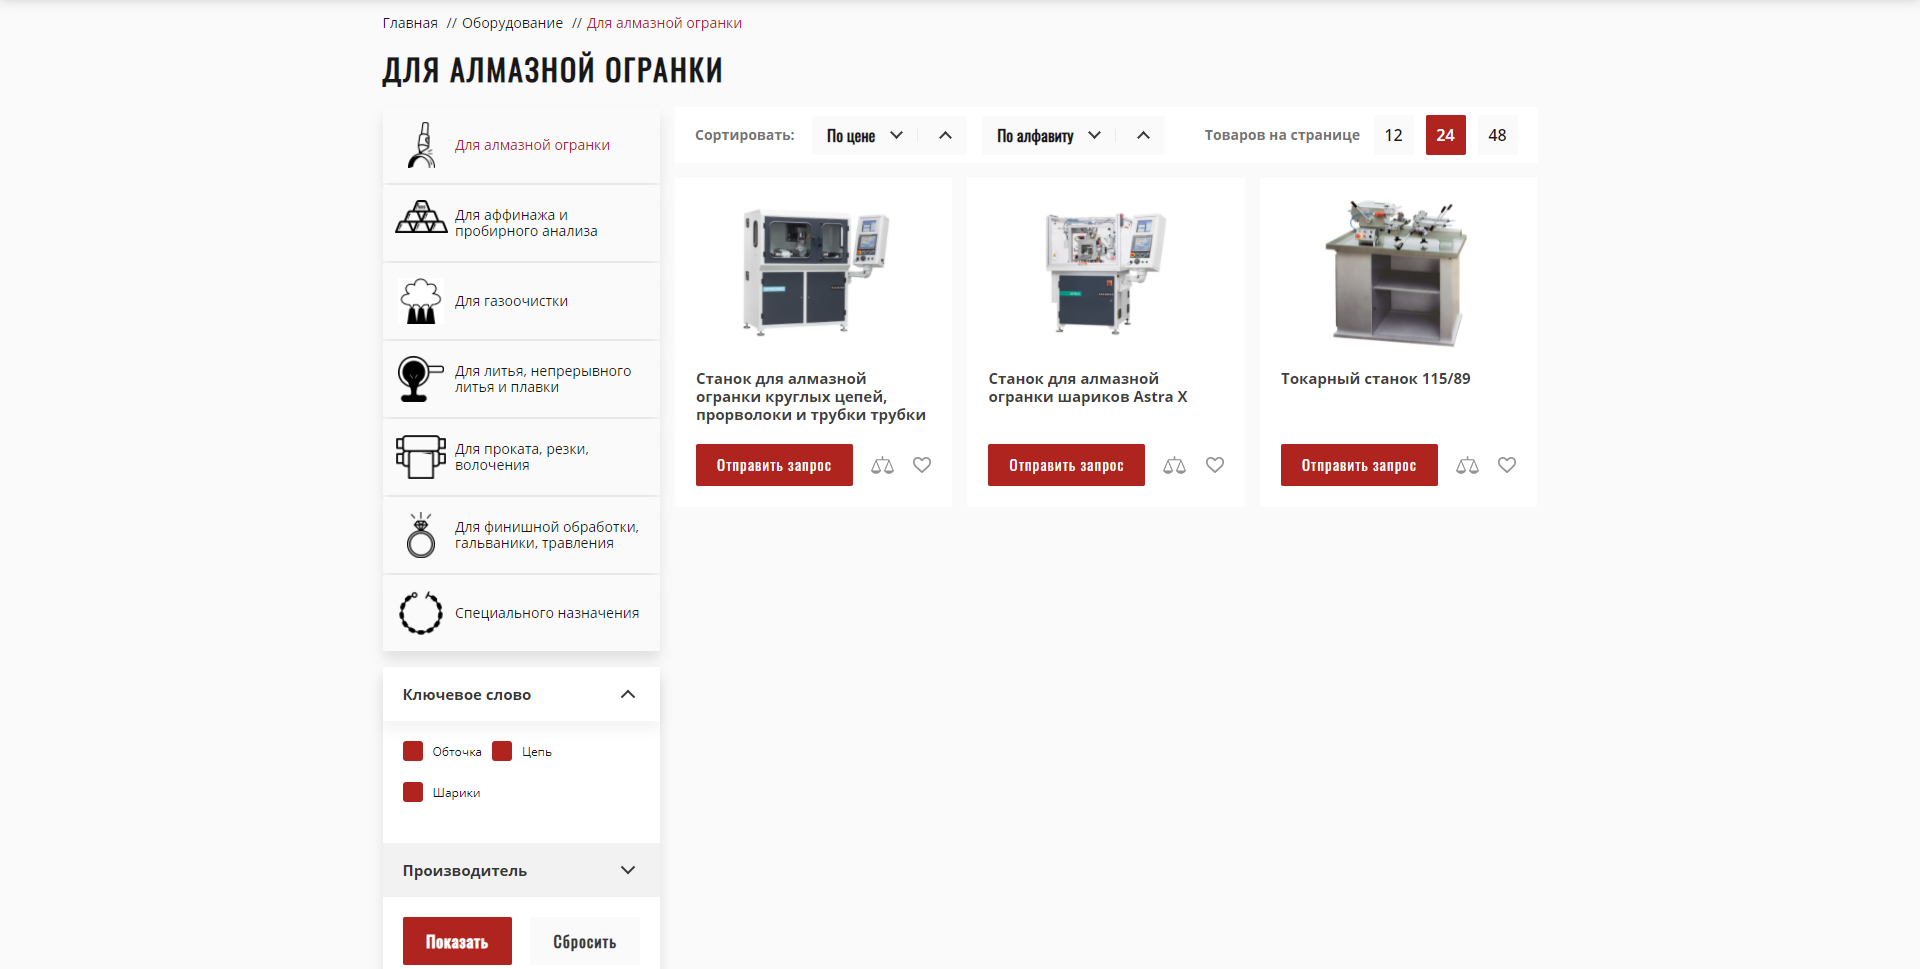 италмакс - интернет-магазин оборудования и расходников для ювелиров